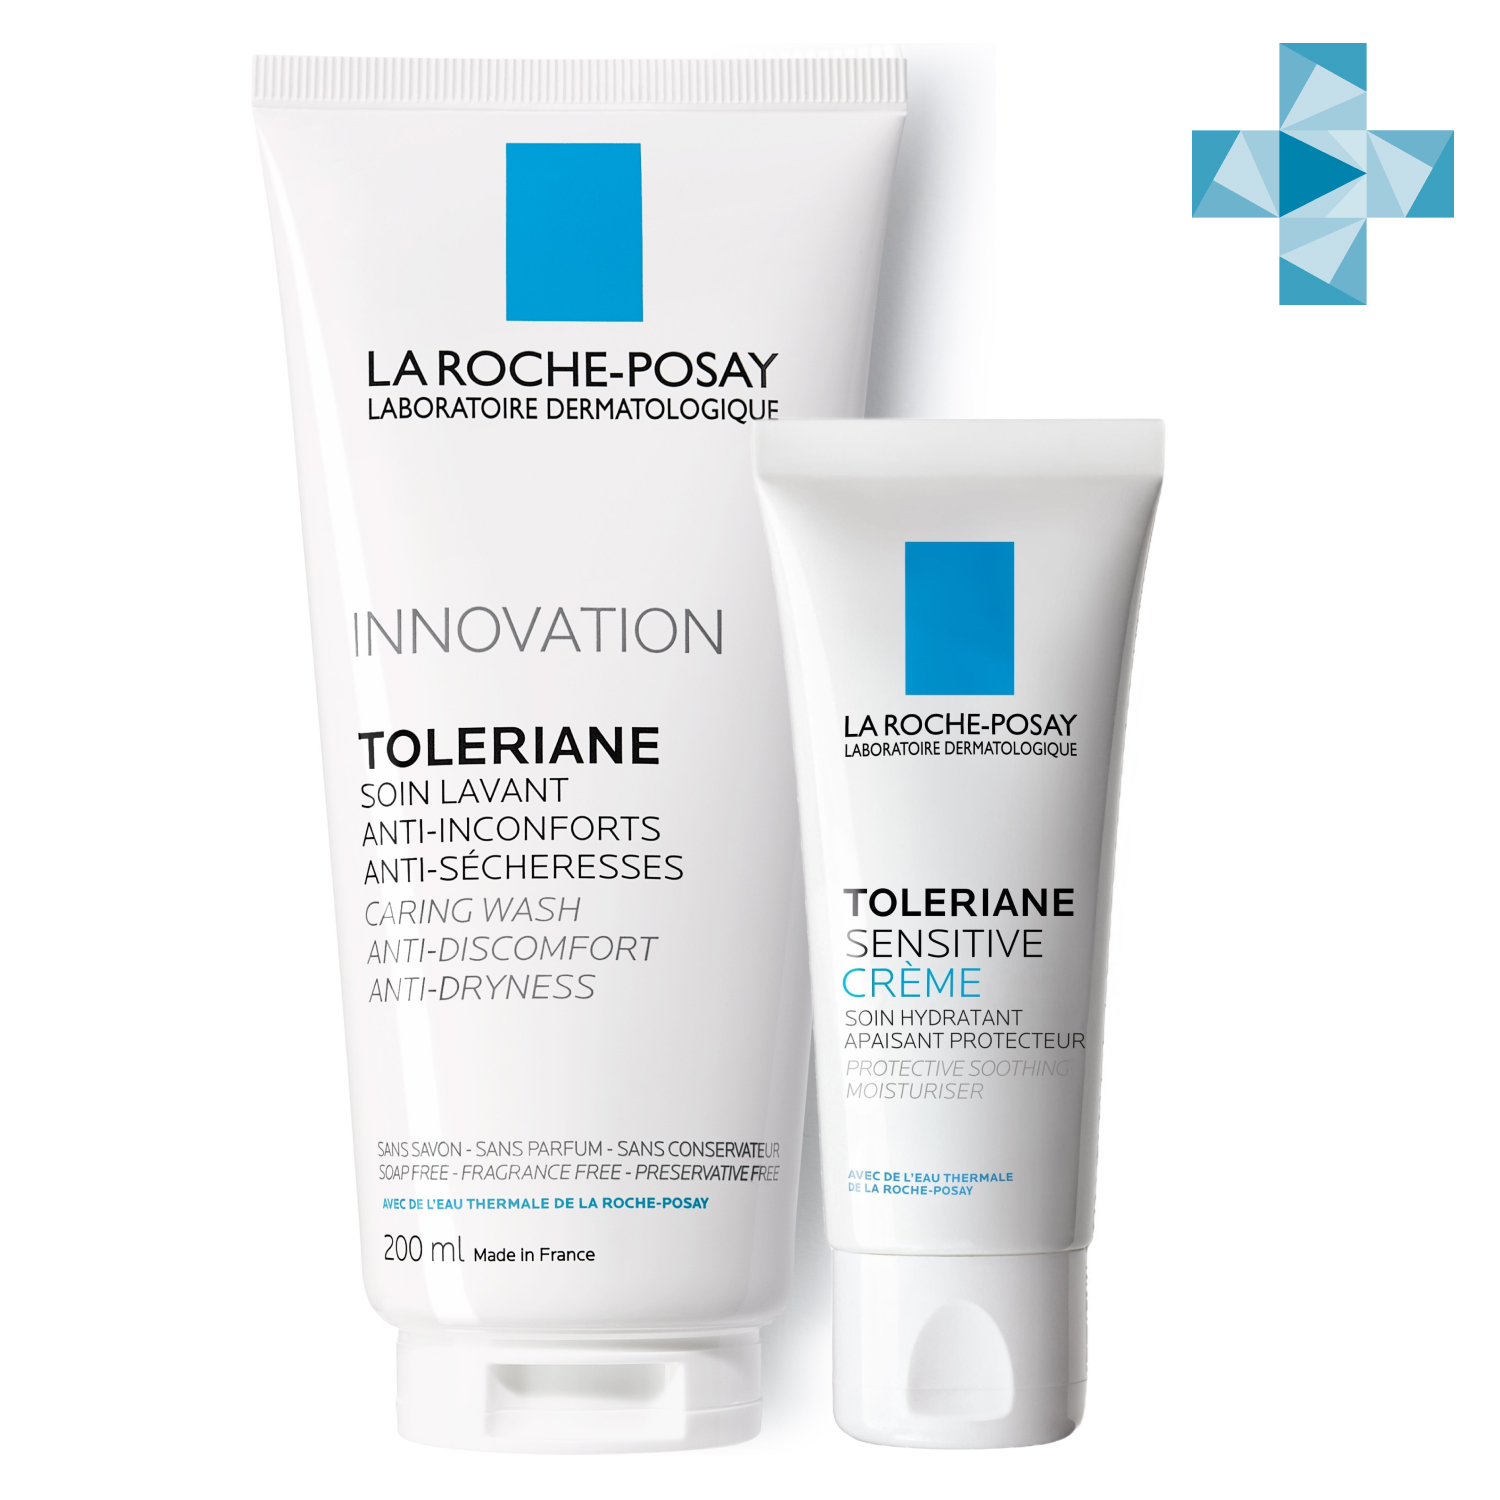 Ля Рош Позе Набор Sensitive для чувствительной кожи (увлажняющий крем с легкой текстурой 40 мл + очищающий гель для 200 мл) (La Roche-Posay, Toleriane) фото 0